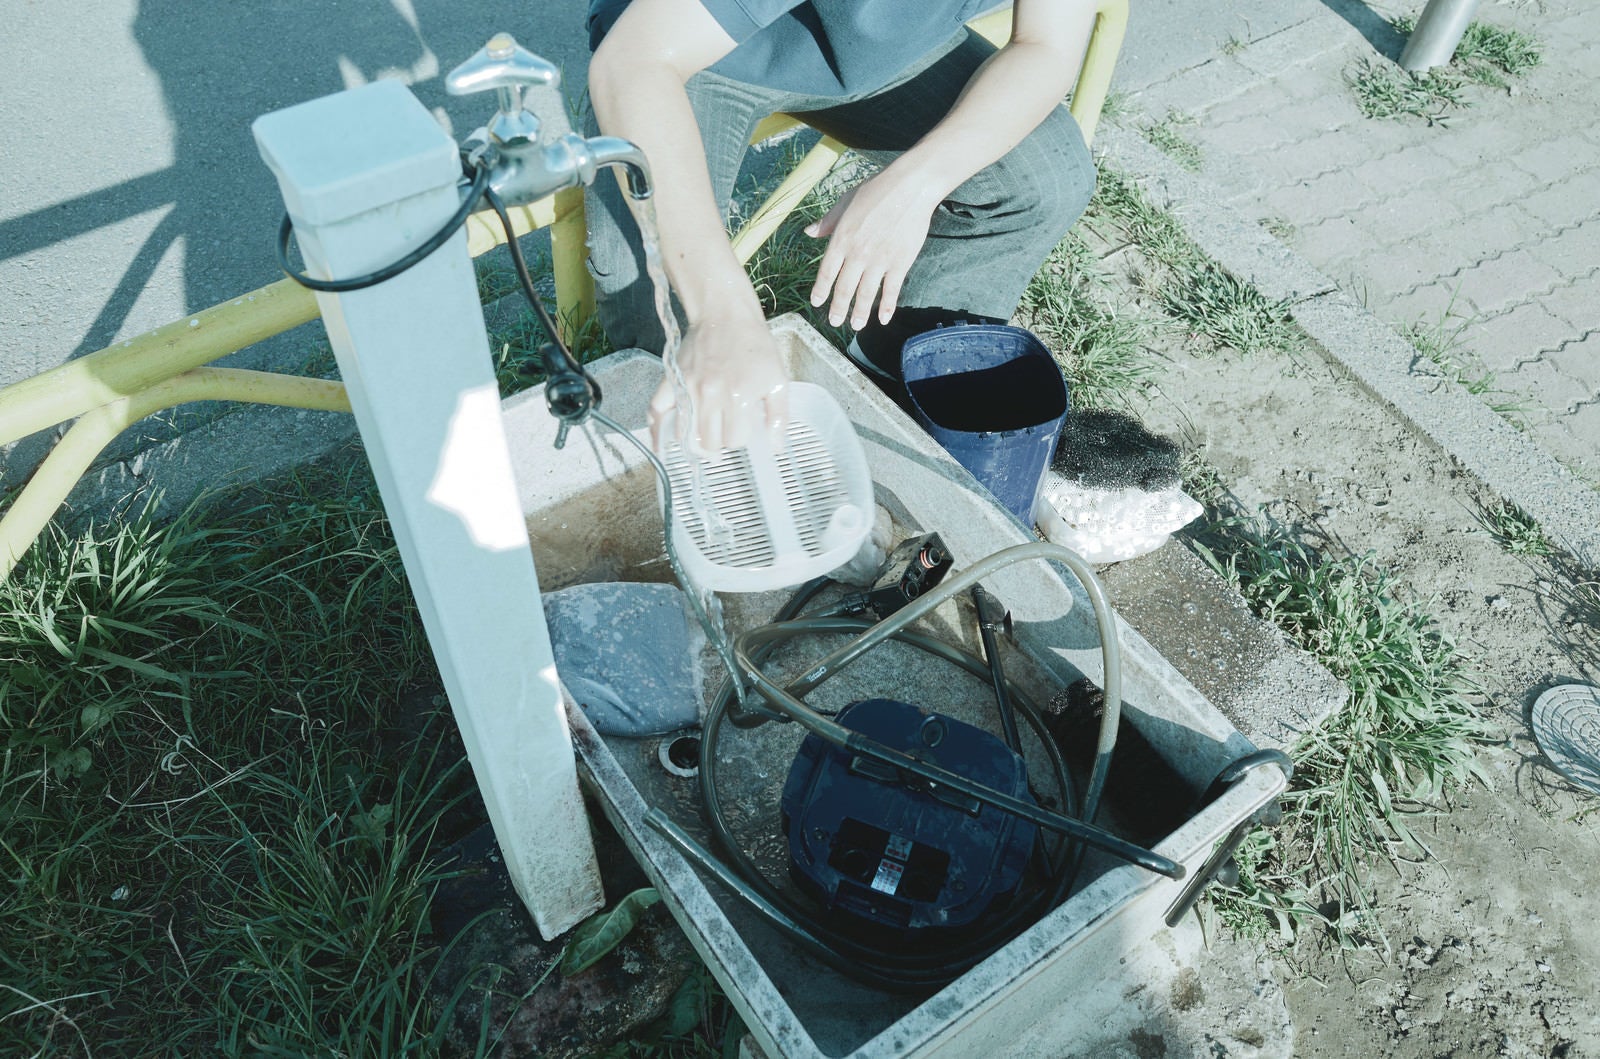 「公園で外部濾過装置を洗う男子高校生」の写真